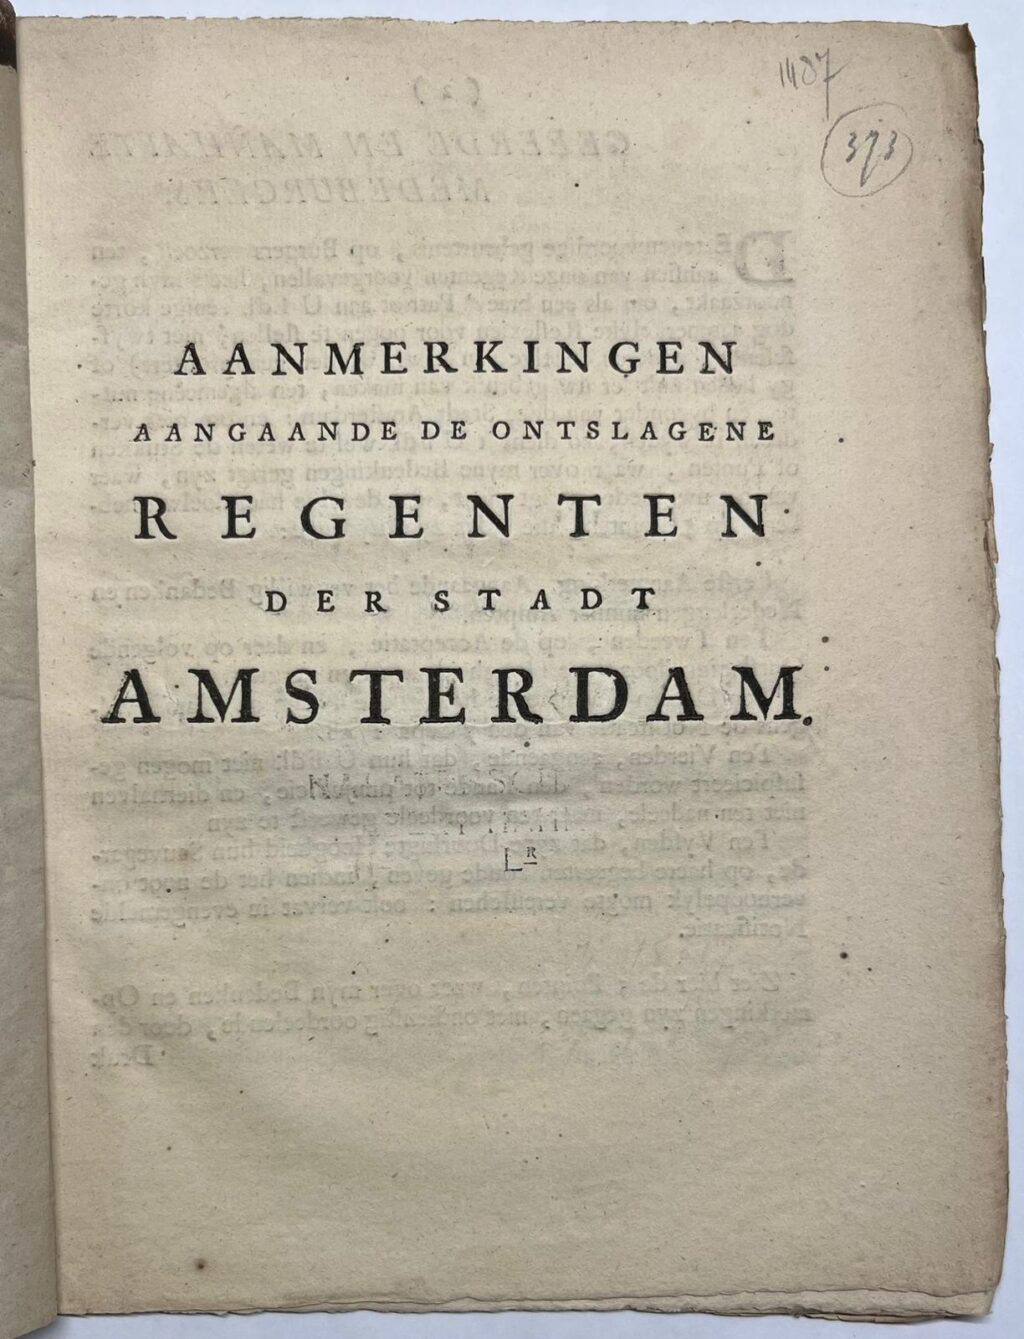 [Printed publication, 1748, Amsterdam] Aanmerkingen aangaande de ontslagene Regenten der stadt Amsterdam, Jan de Waarheidt, [s.l.], 1748, 7 pp.